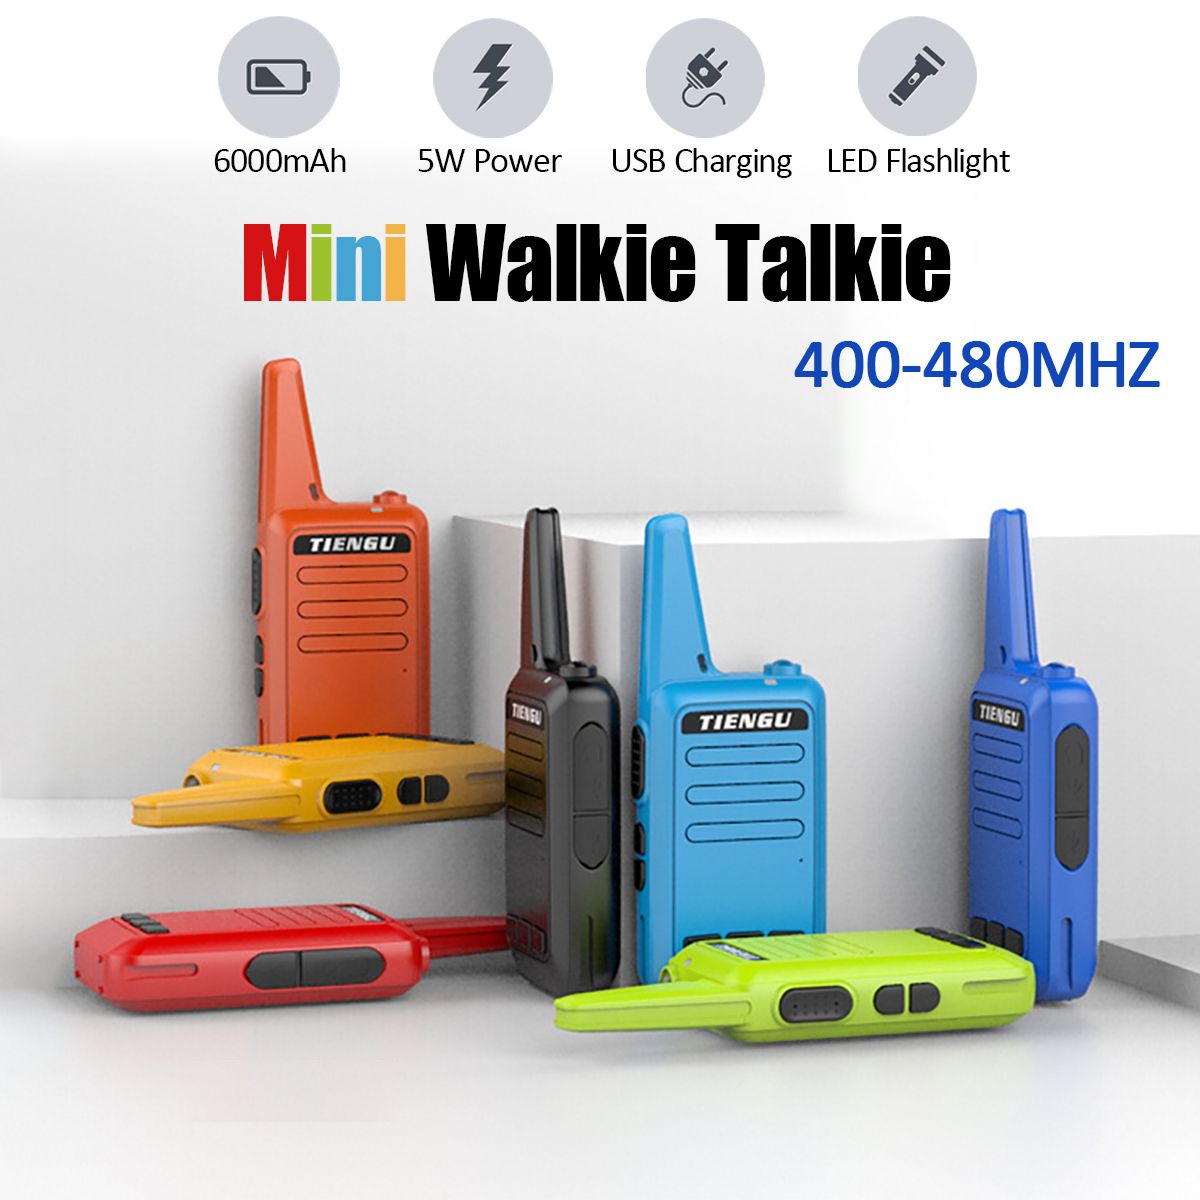 16-Channels-400-480MHZ-Mini-Walkie-Talkie-Flashlight-USB-Charging-Outdoor-Travel-Civilian-Radio-Walk-1484981